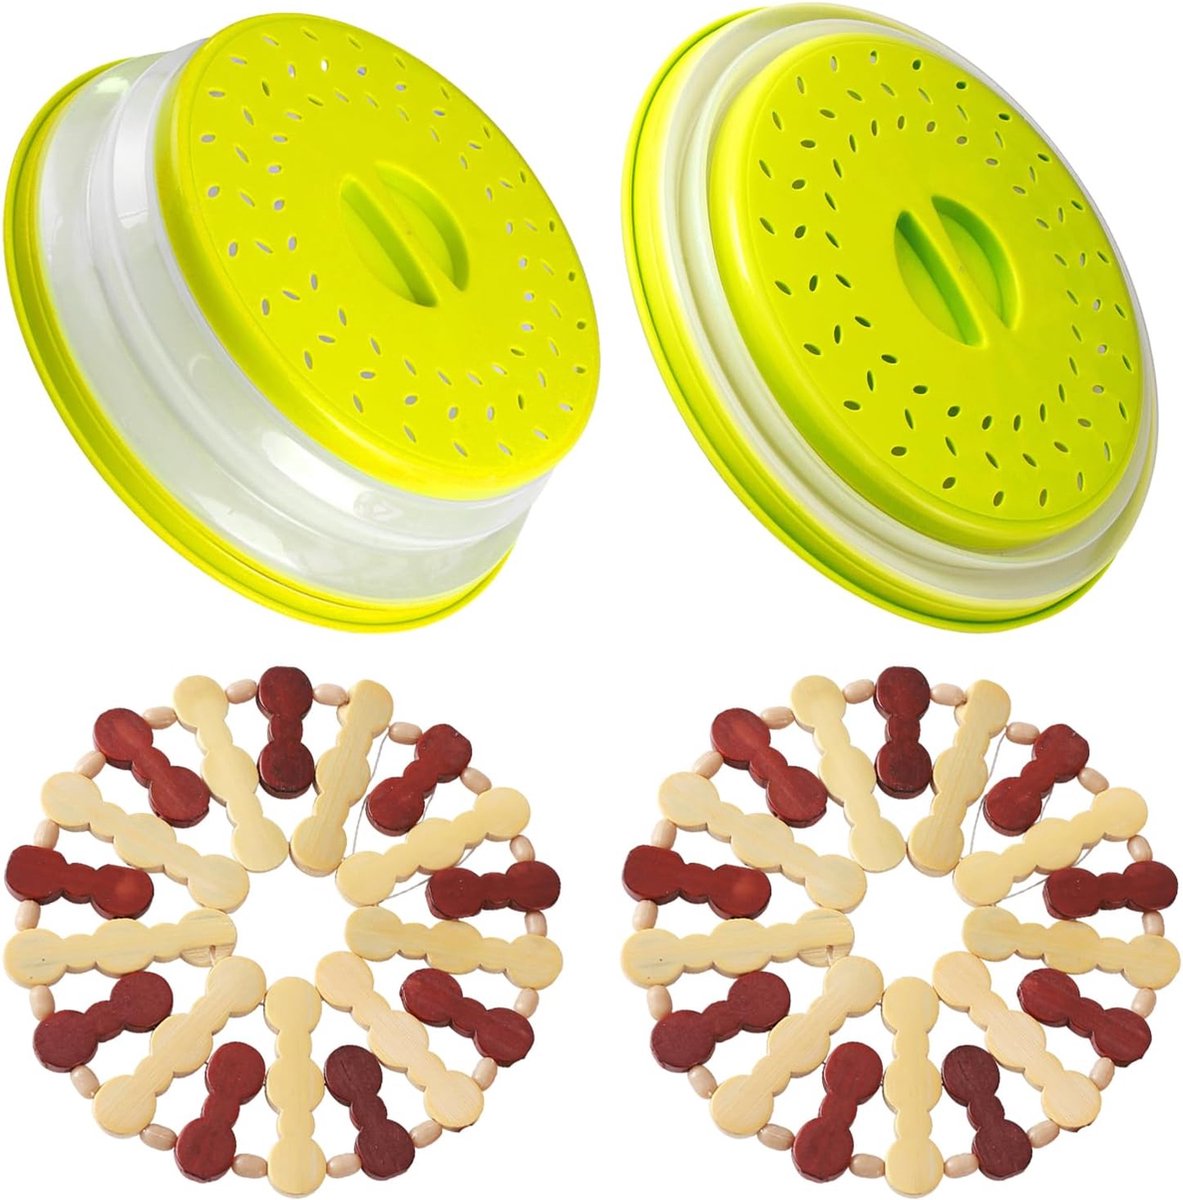 Magnetronafdekking, 2 stuks afdekhoezen voor de magnetron, opvouwbare magnetronhoes met 2 placemats van hout, filtermand met stoomgaten voor groenten en fruit, BPA-vrij